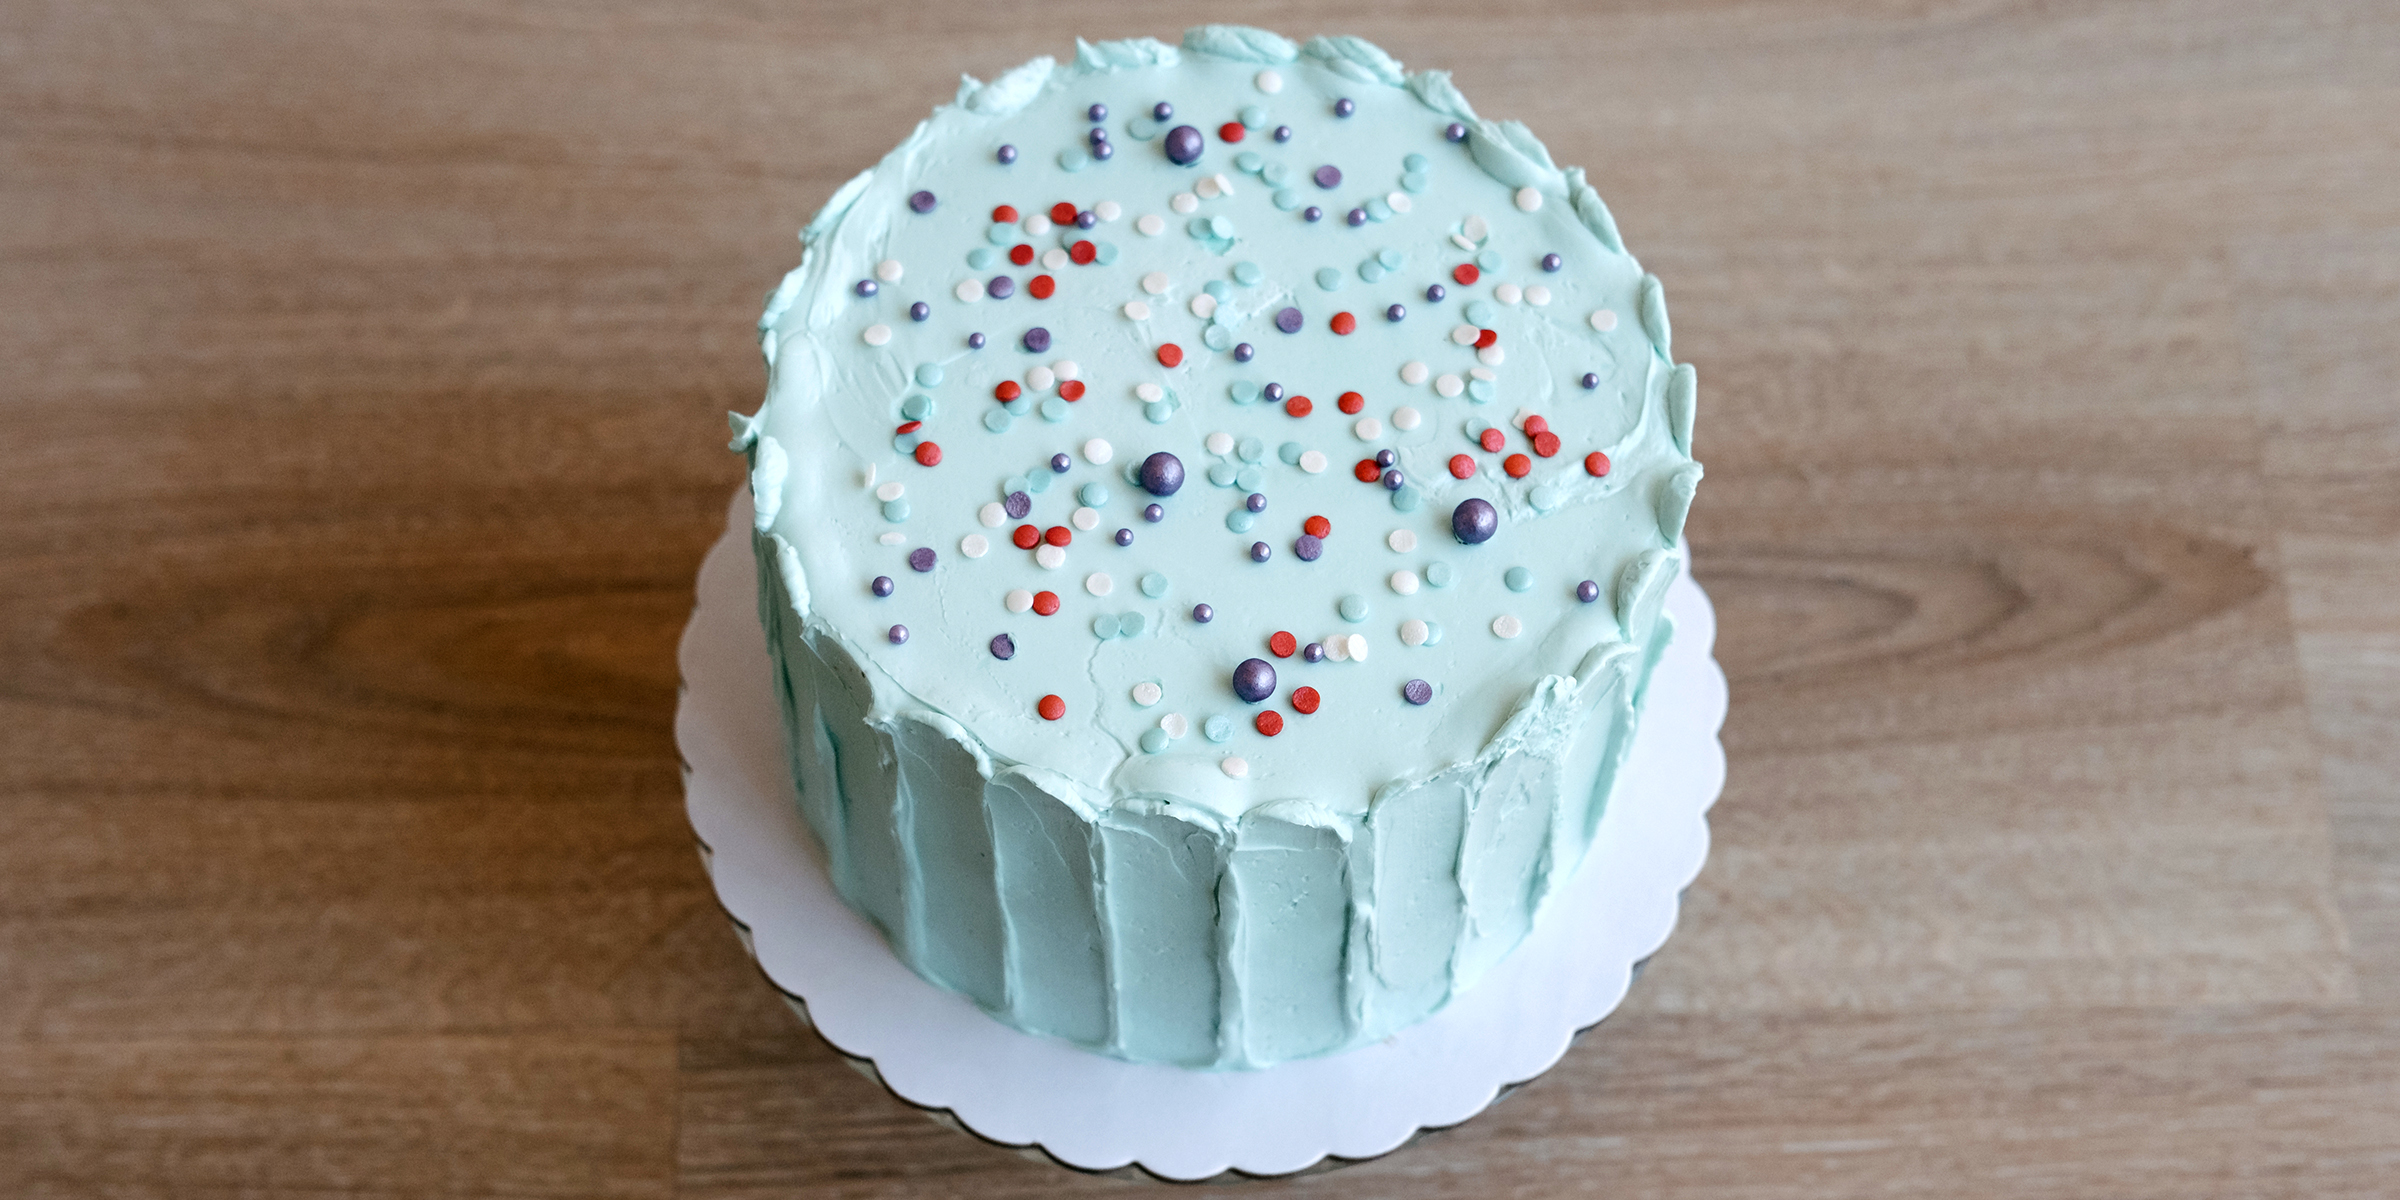 Birthday cake | Source: Shutterstock